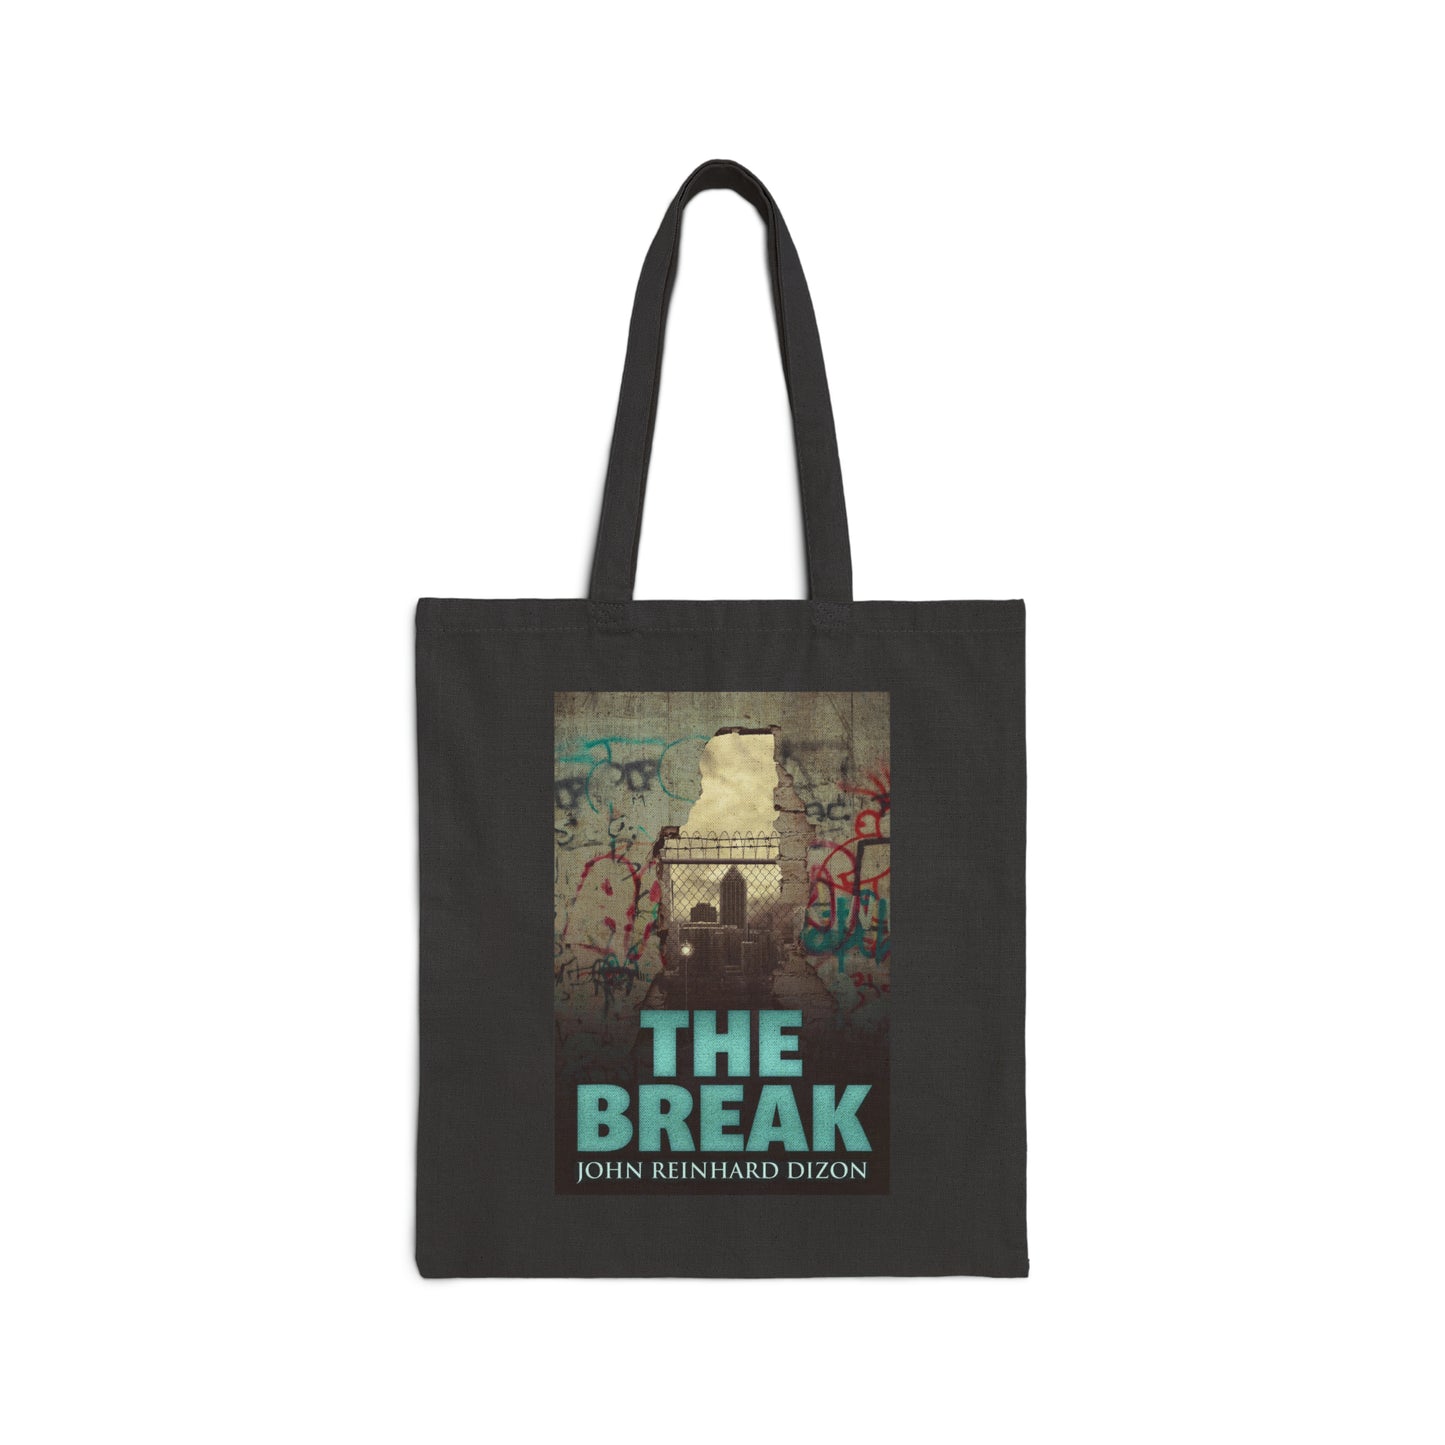 The Break - Cotton Canvas Tote Bag